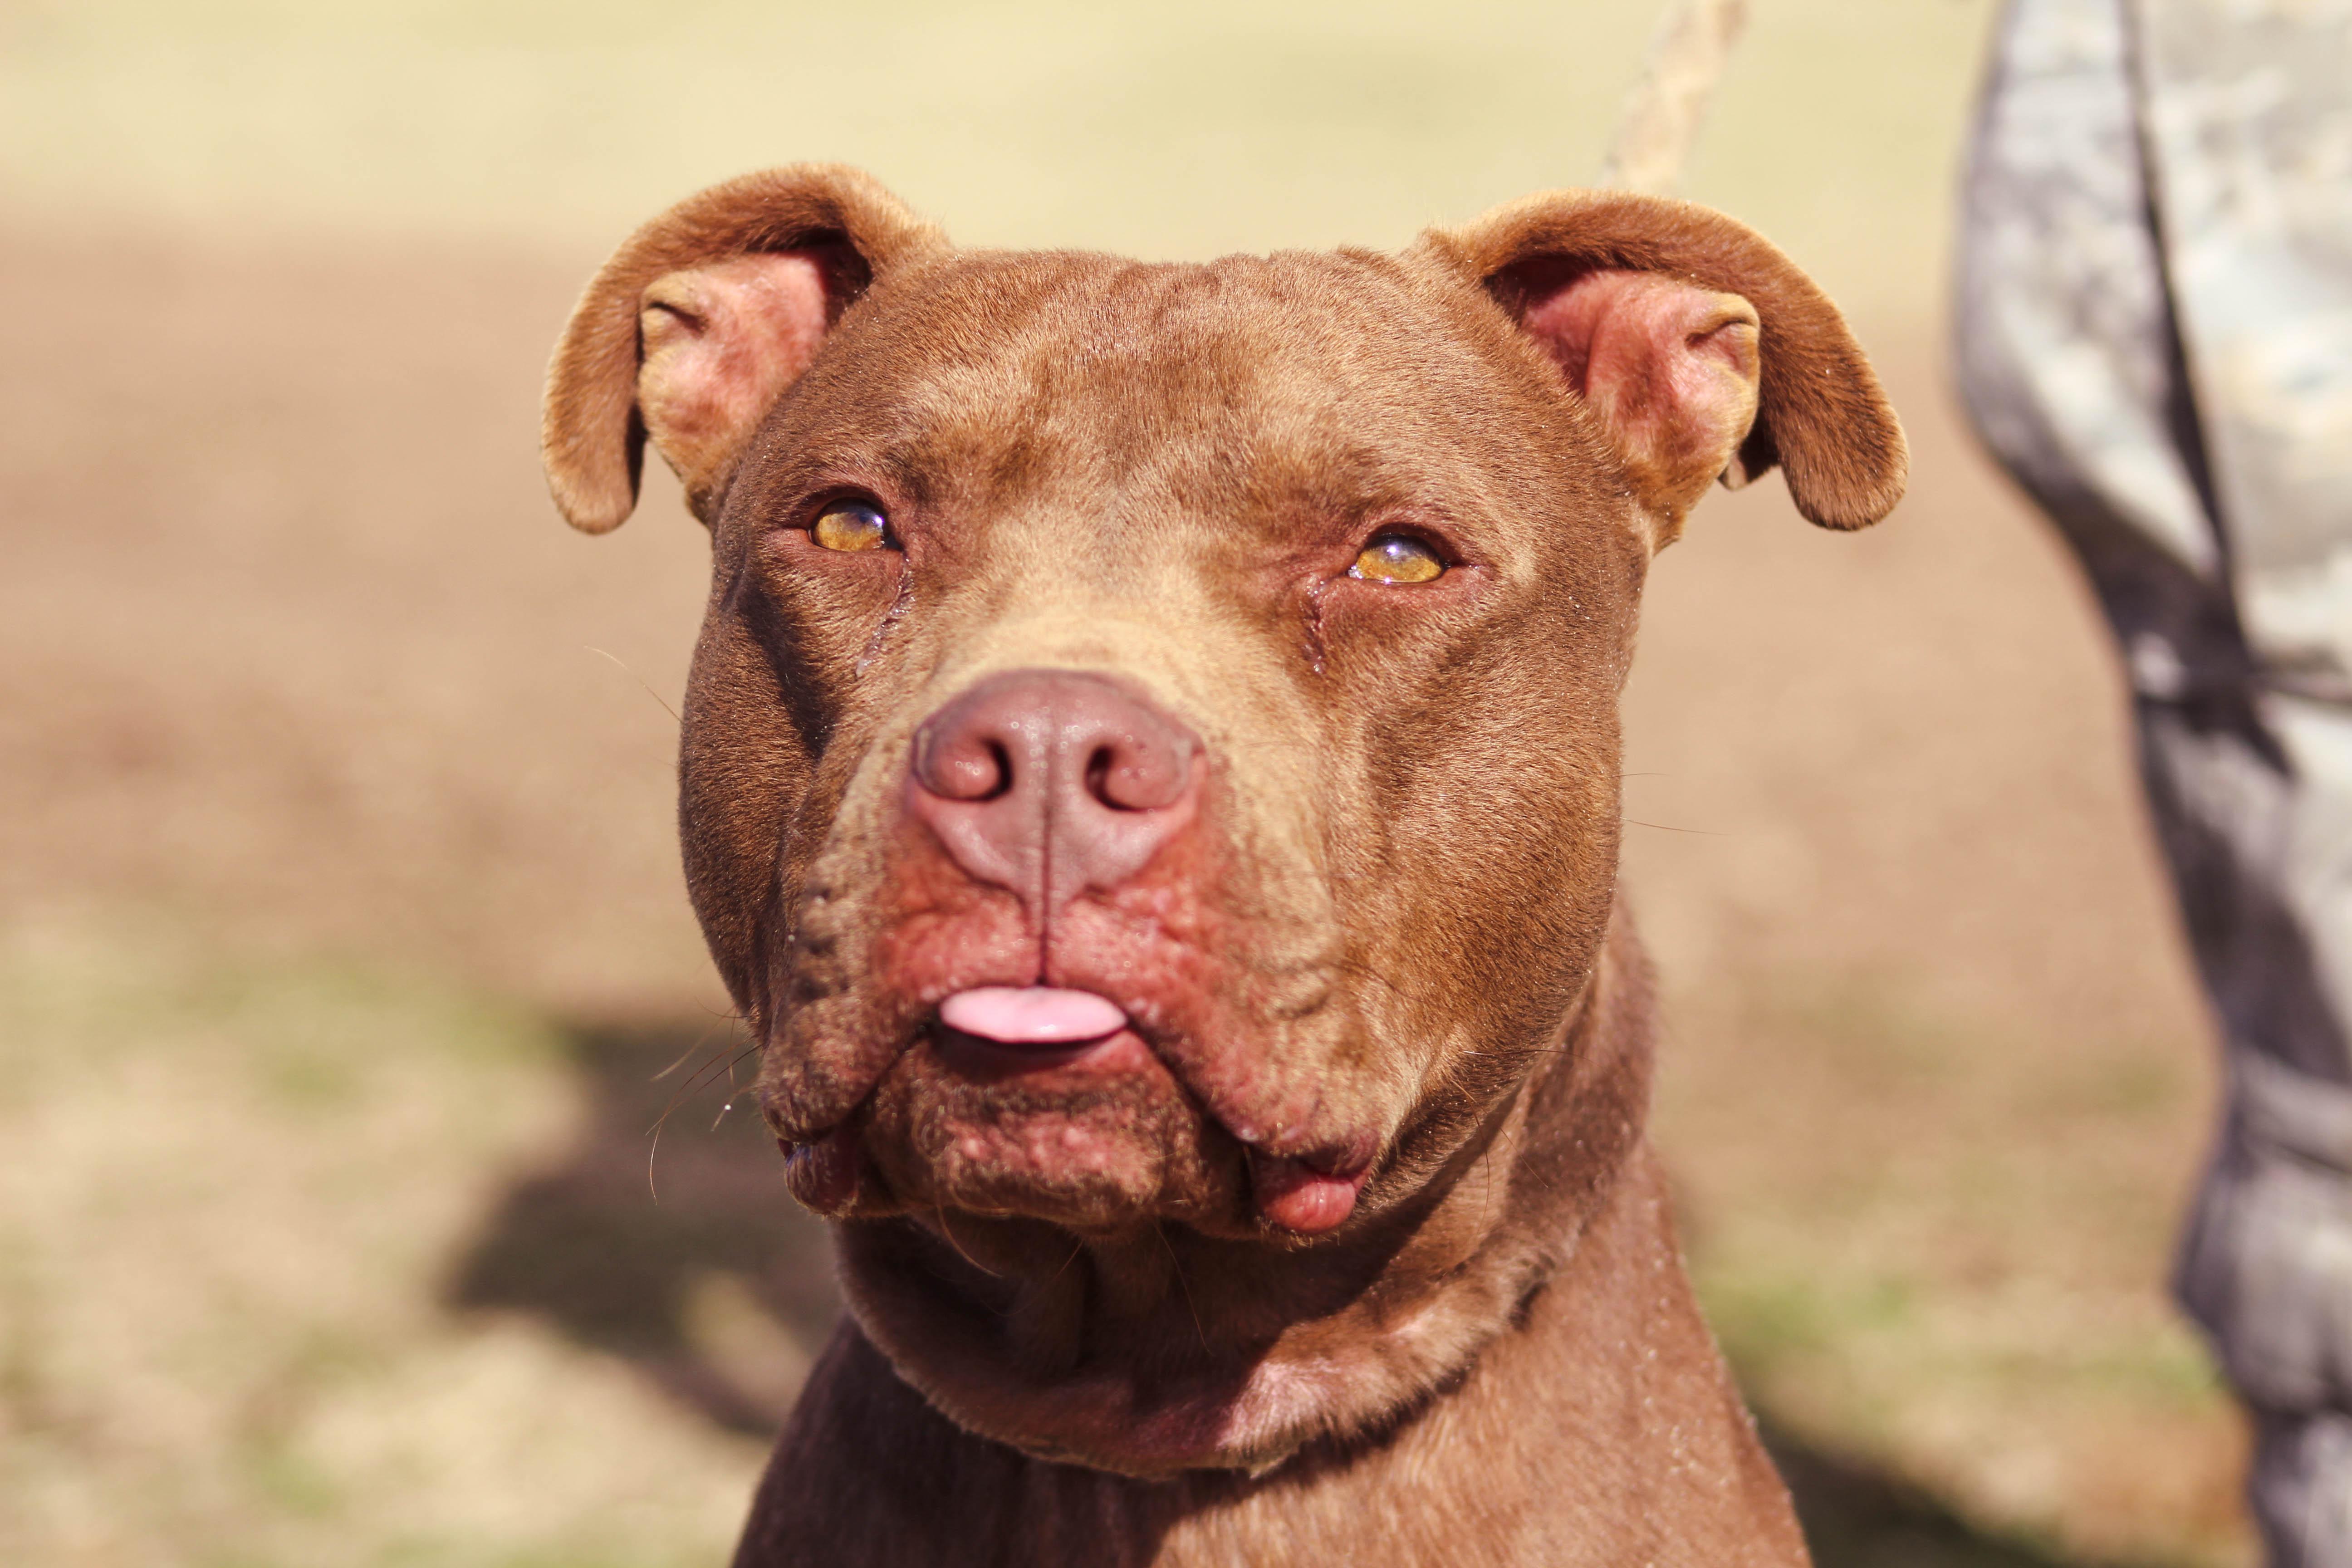 Dog for adoption - Sandman, a Pit Bull Terrier in Blanchard, OK | Petfinder